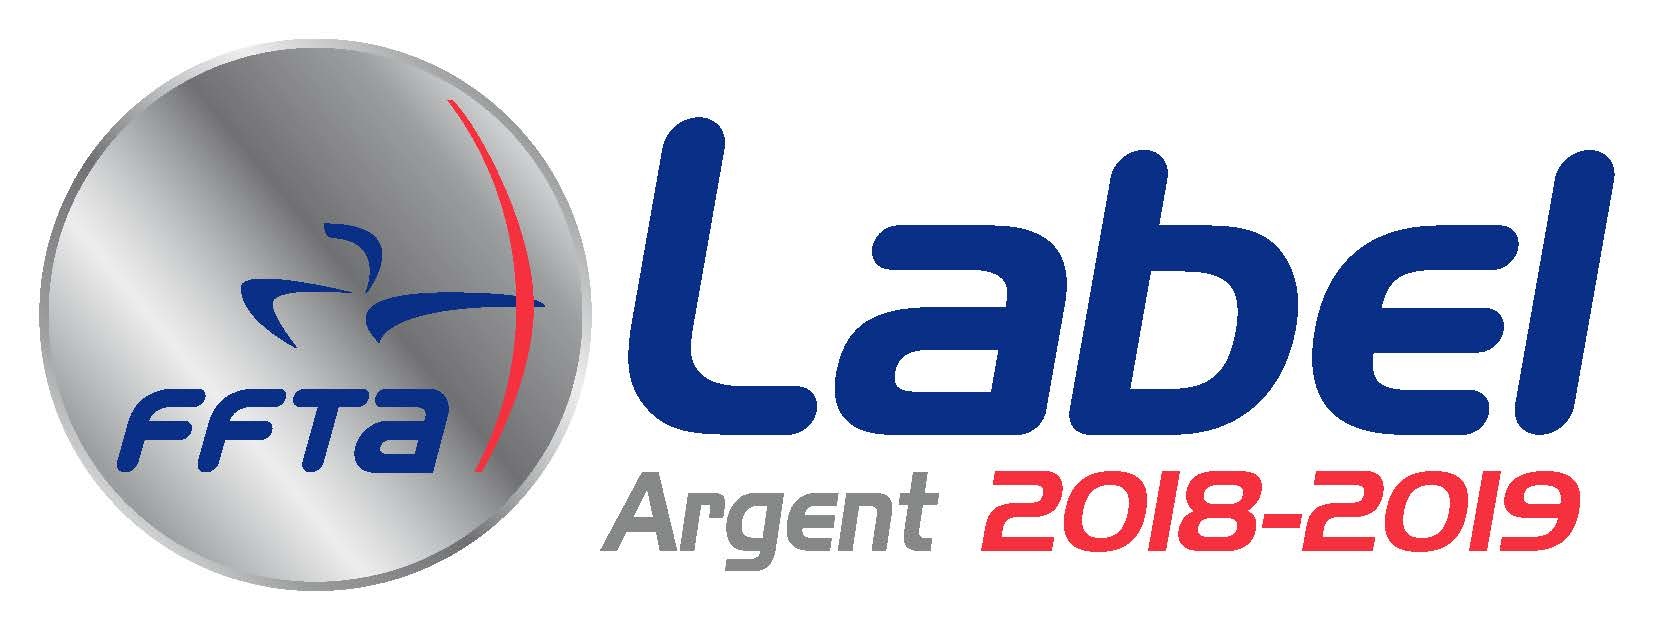 Label ARGENT FFTA 2018-2021